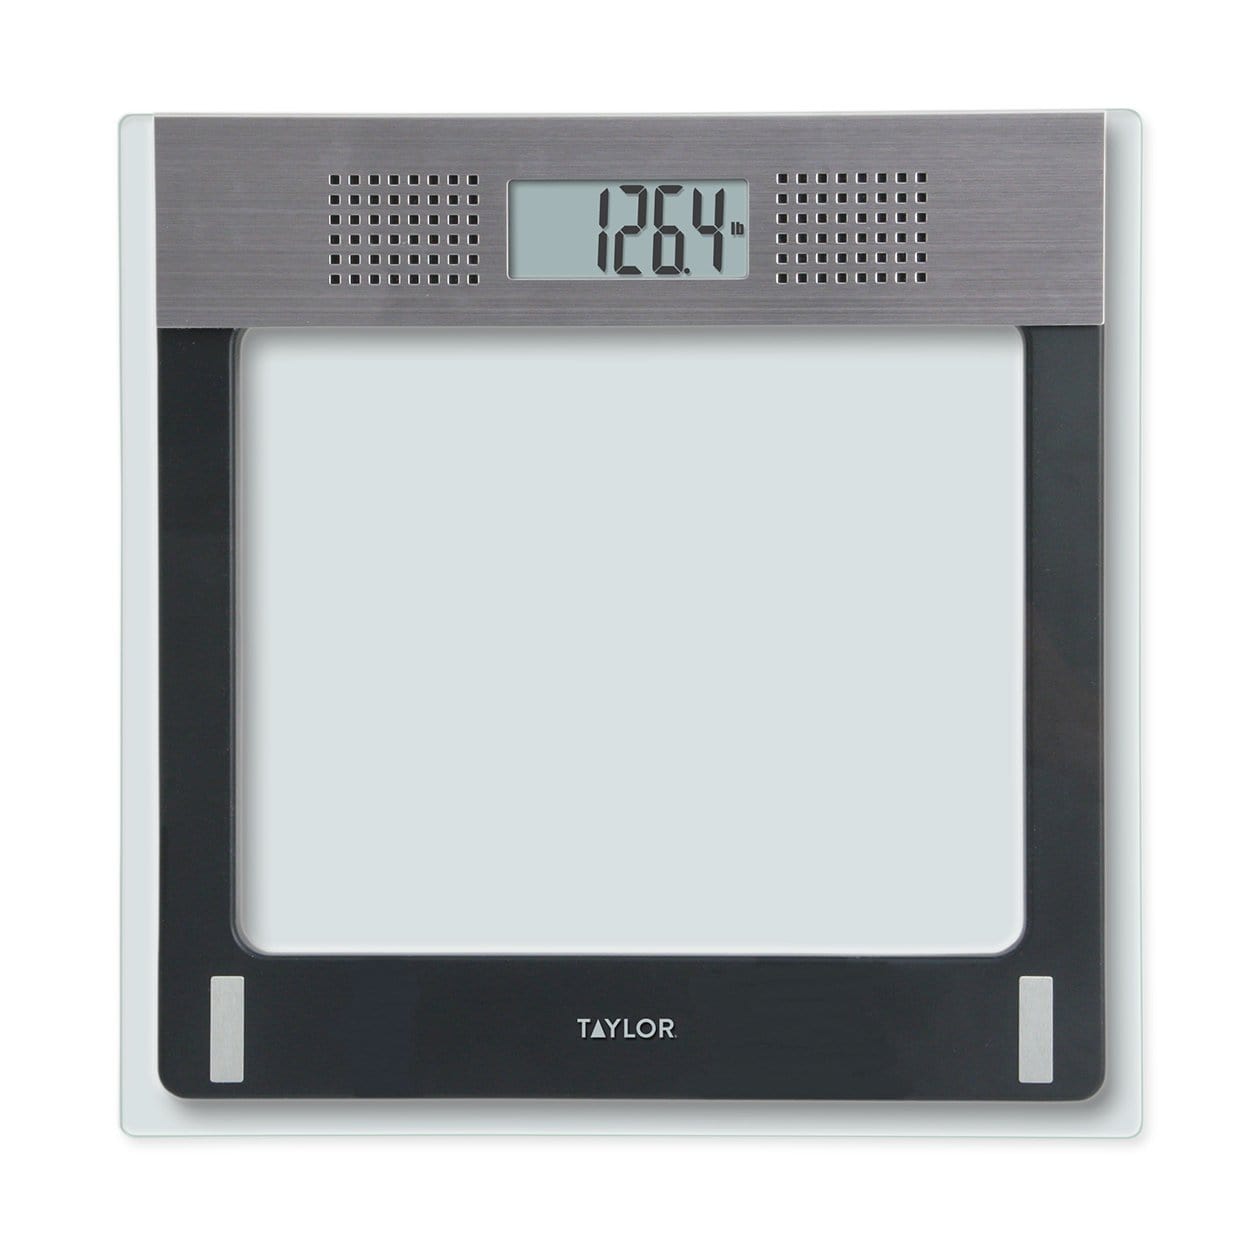 Digital Talking Bathroom Scale Clear Glass